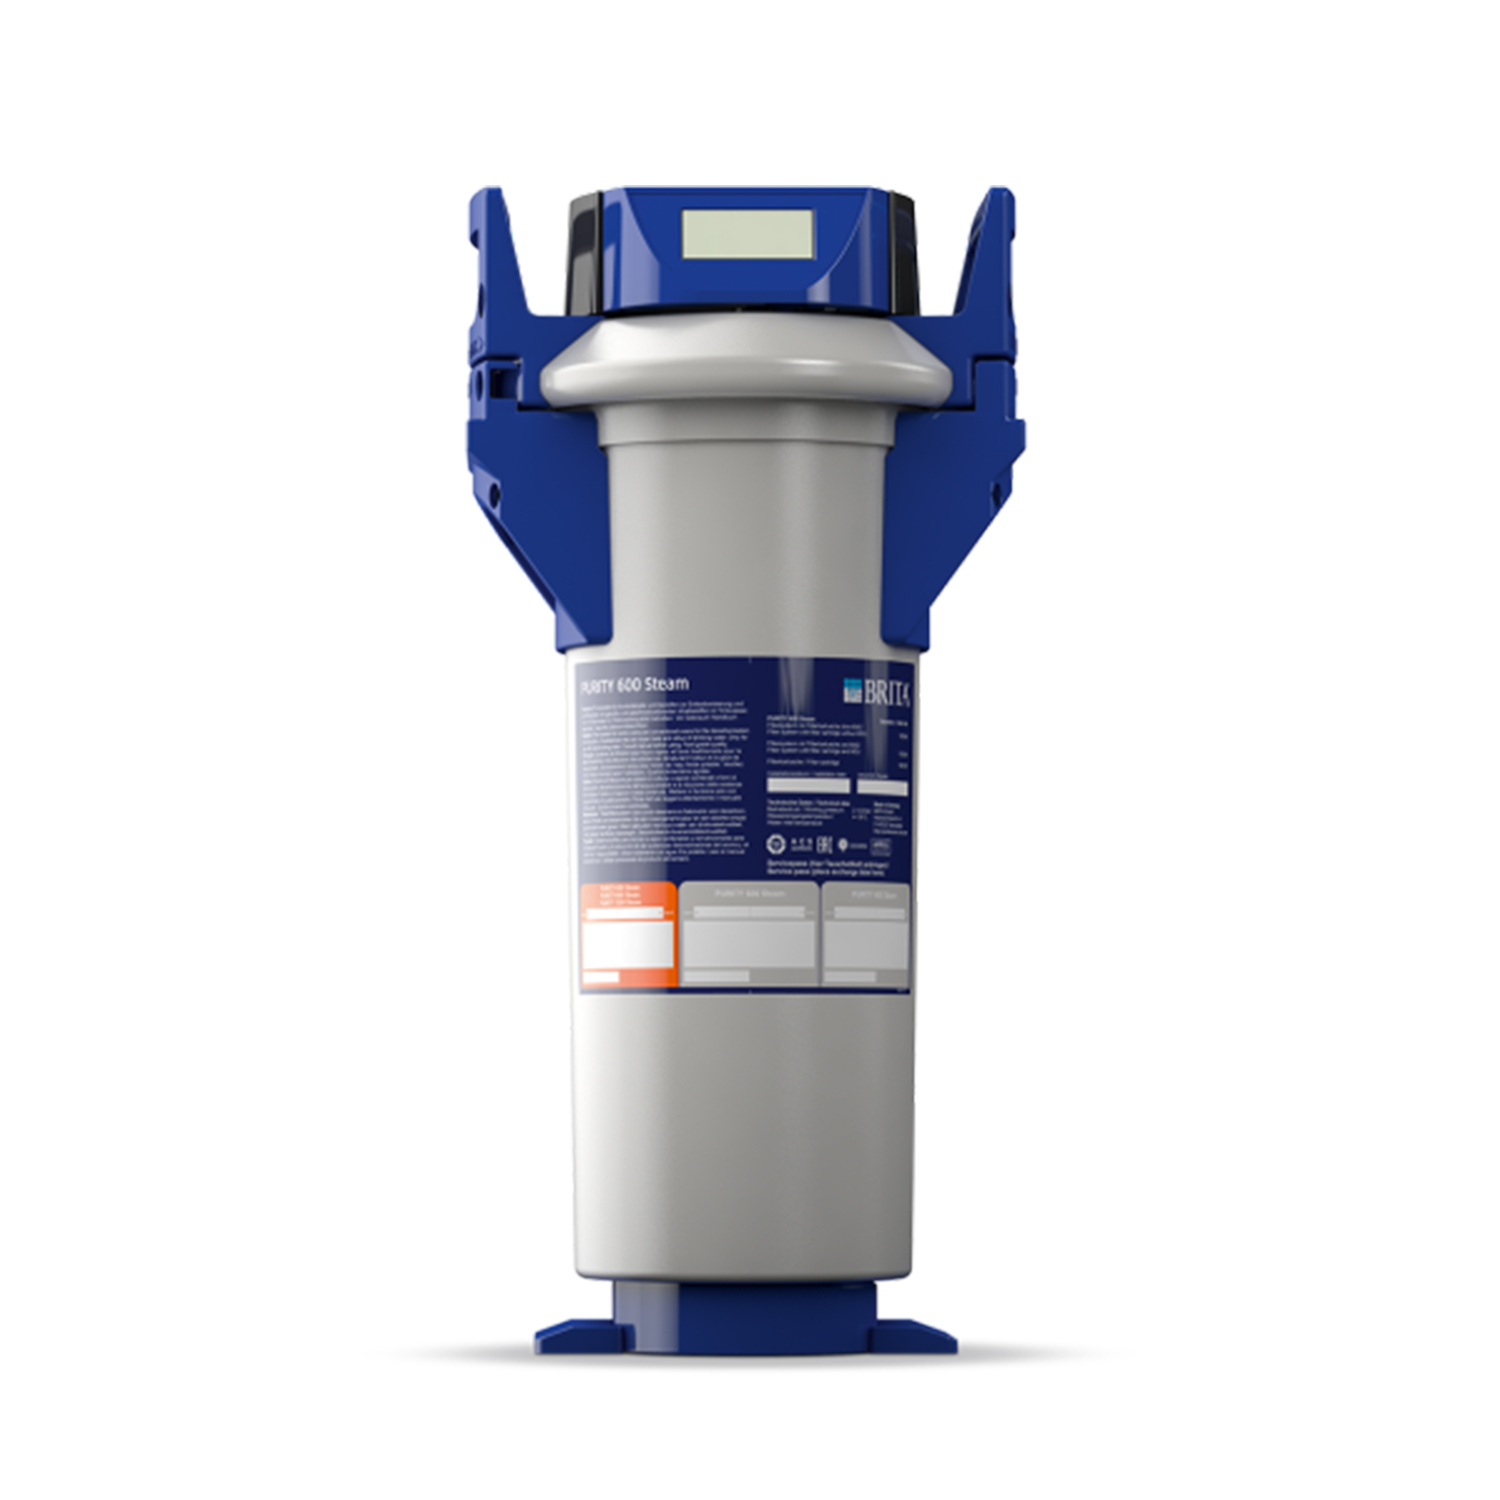 Wasserfilter PURITY STEAM für Steamer und Heissluftdämpfer 3680 lt.  Durchflussmenge